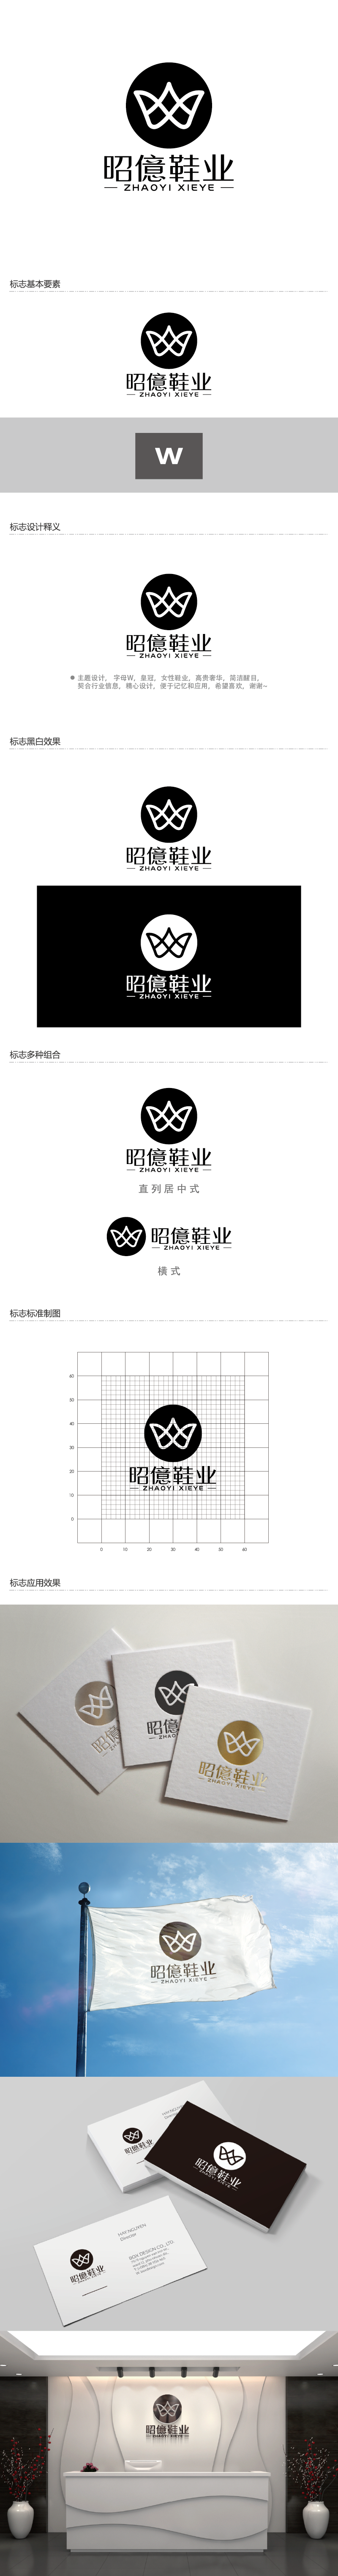 王涛的昭億鞋业logo设计